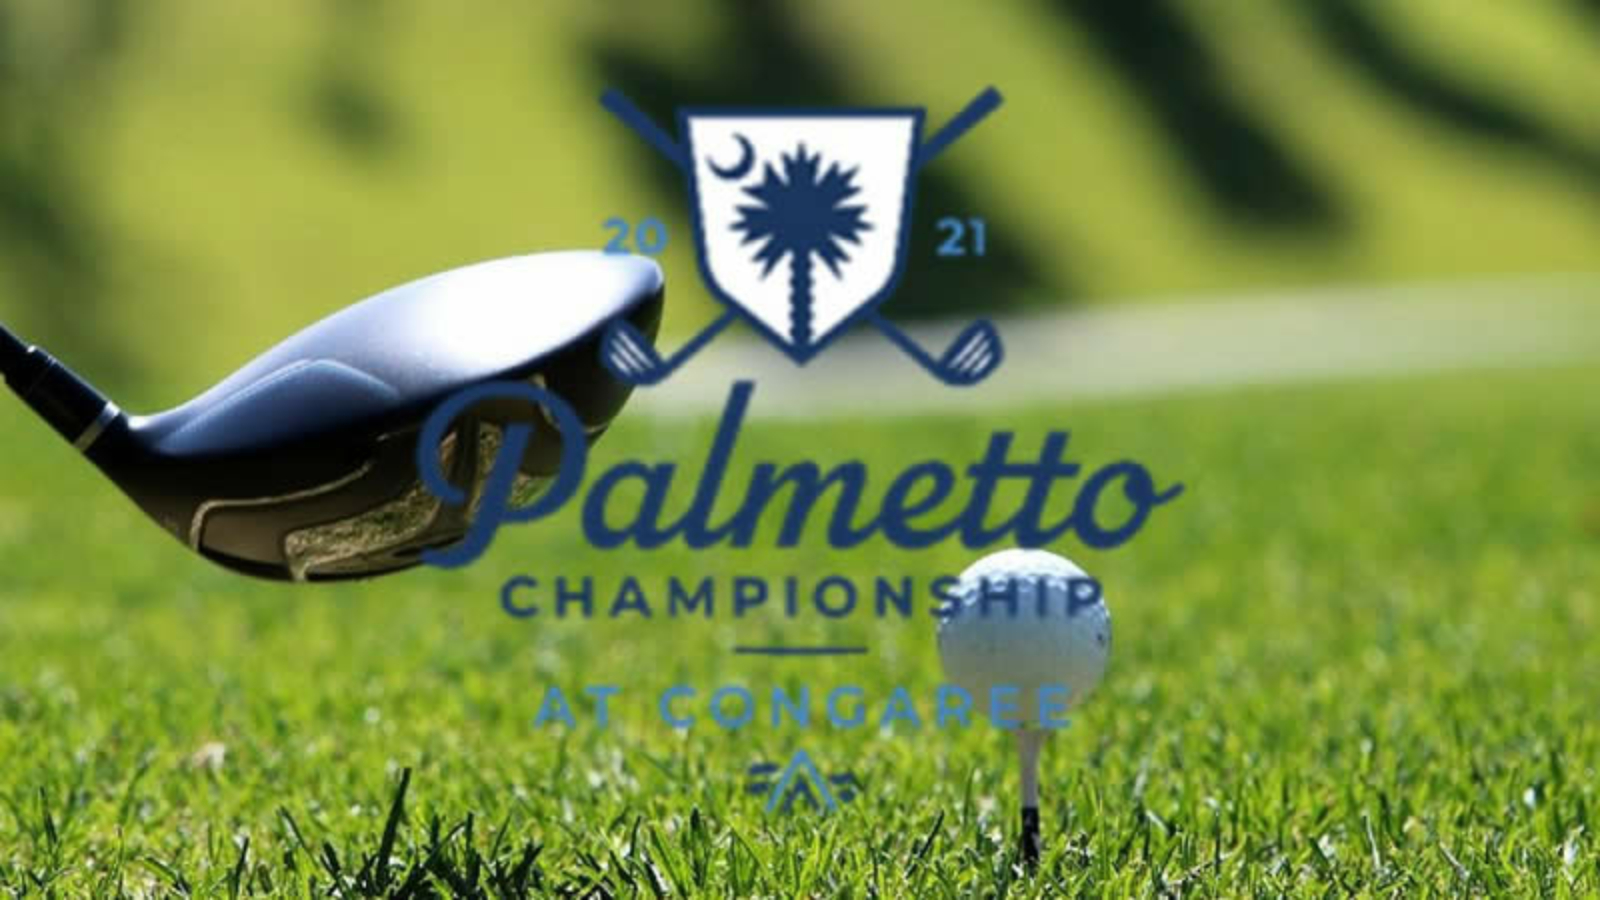 Palmetto Championship 2021